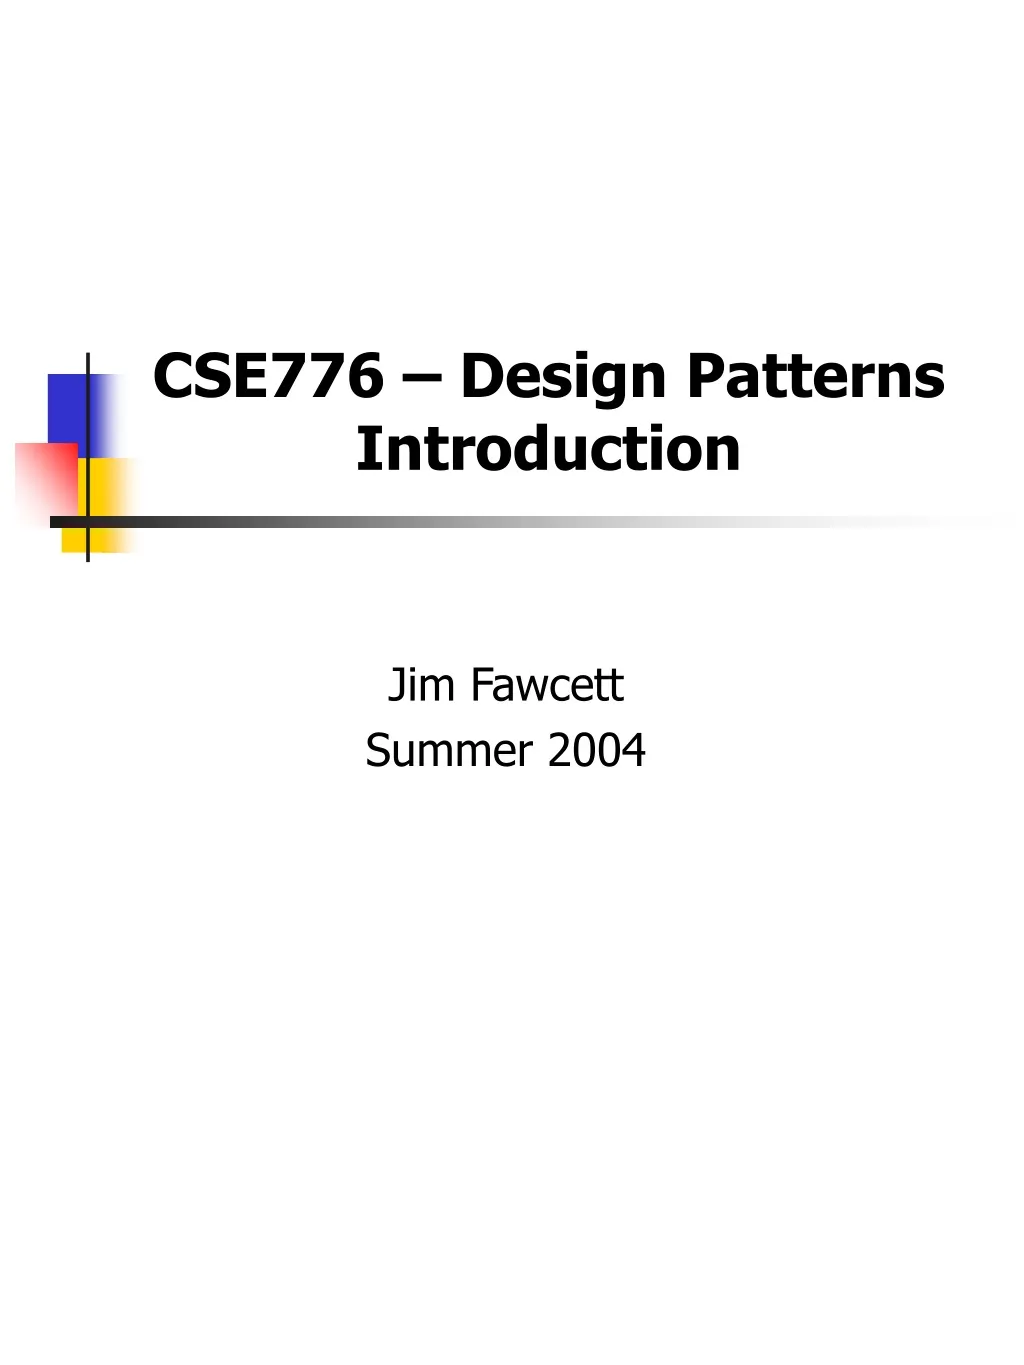 cse776 design patterns introduction